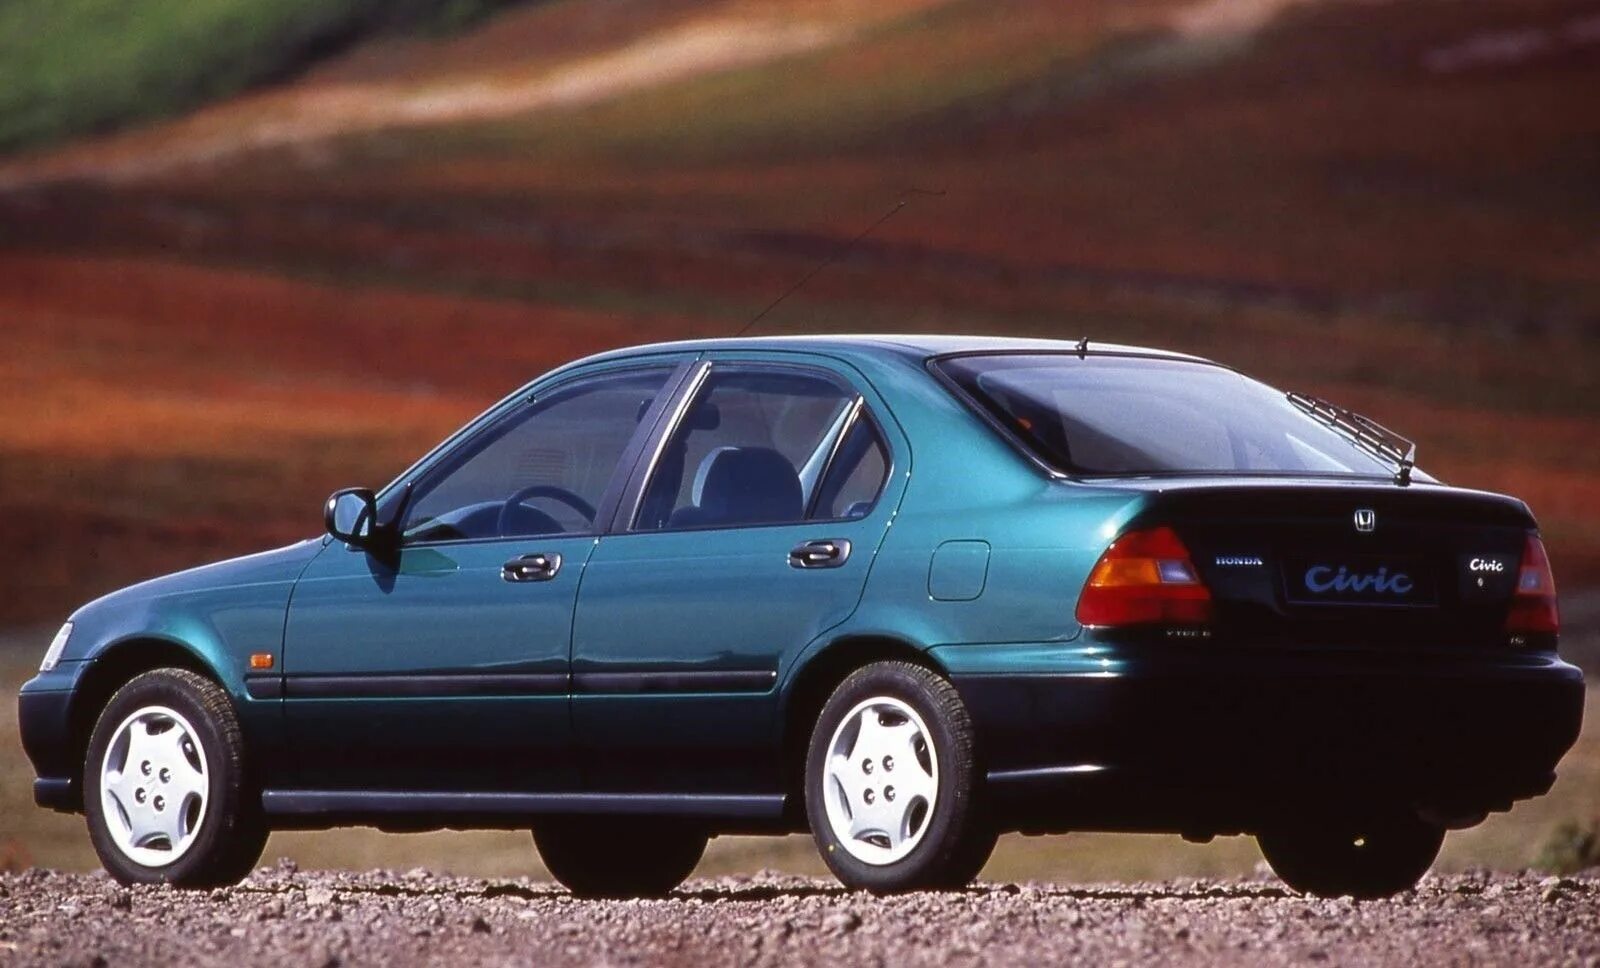 98 год поколение. Honda Civic 6 1996. Хонда Цивик 5 поколения. Honda Civic 5 хэтчбек. Хонда Цивик 5 поколения хэтчбек.